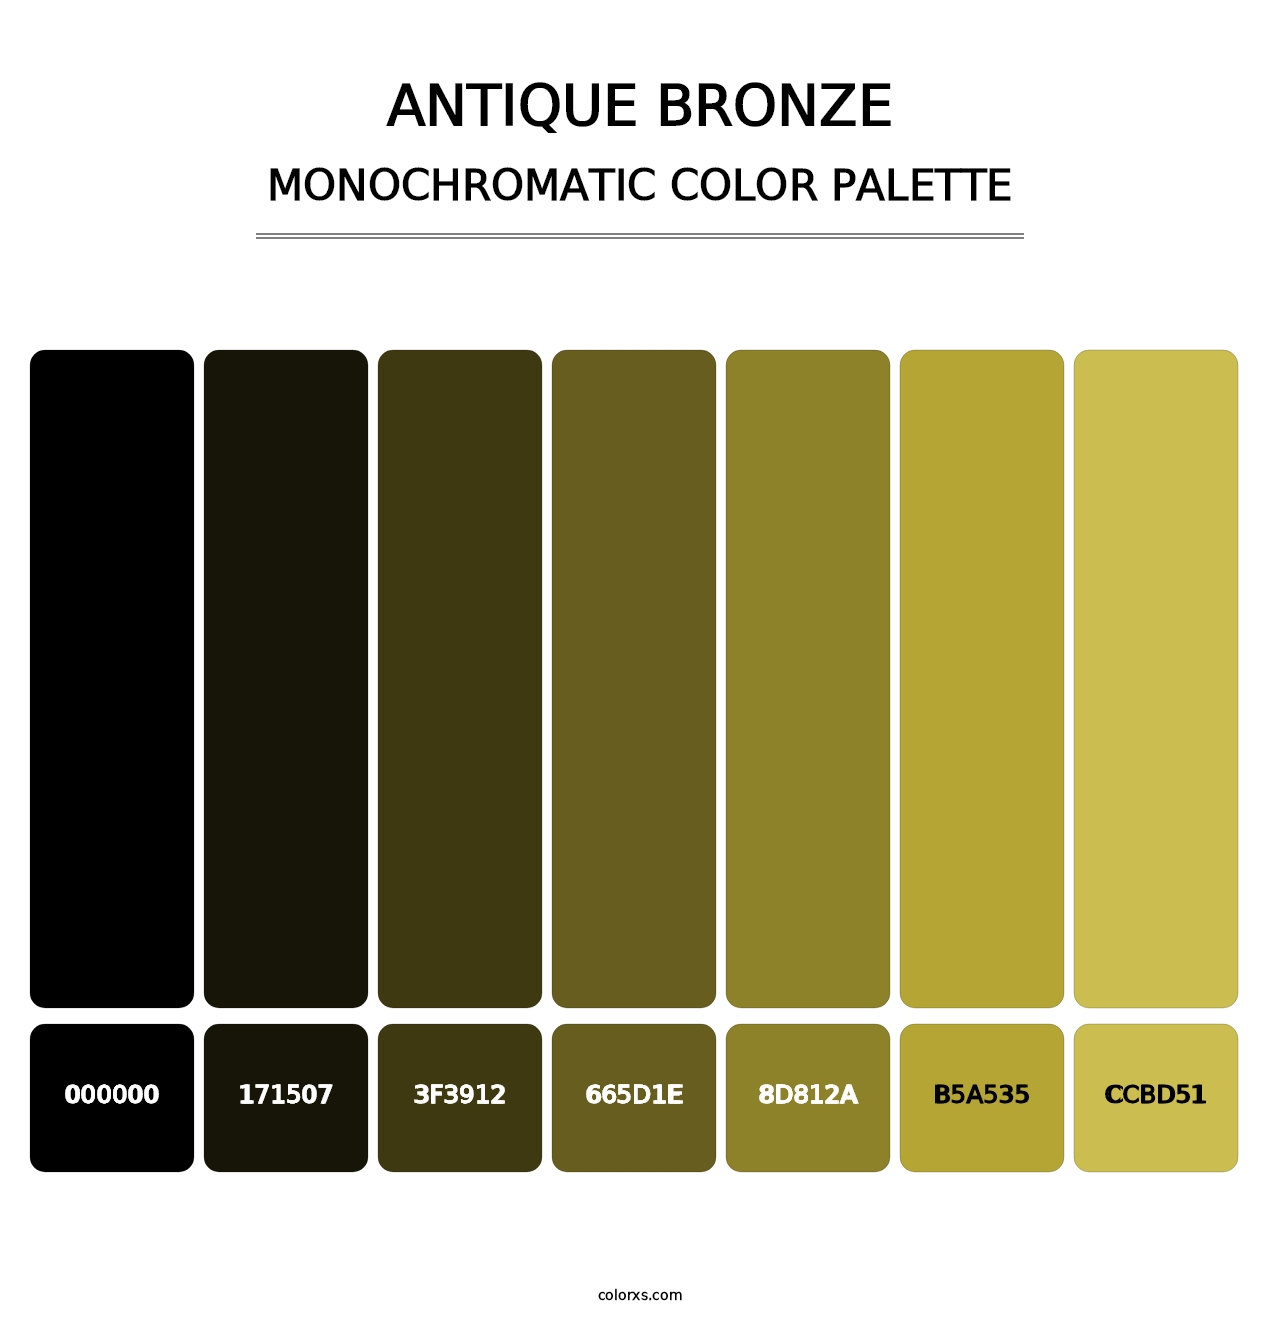 Antique Bronze - Monochromatic Color Palette